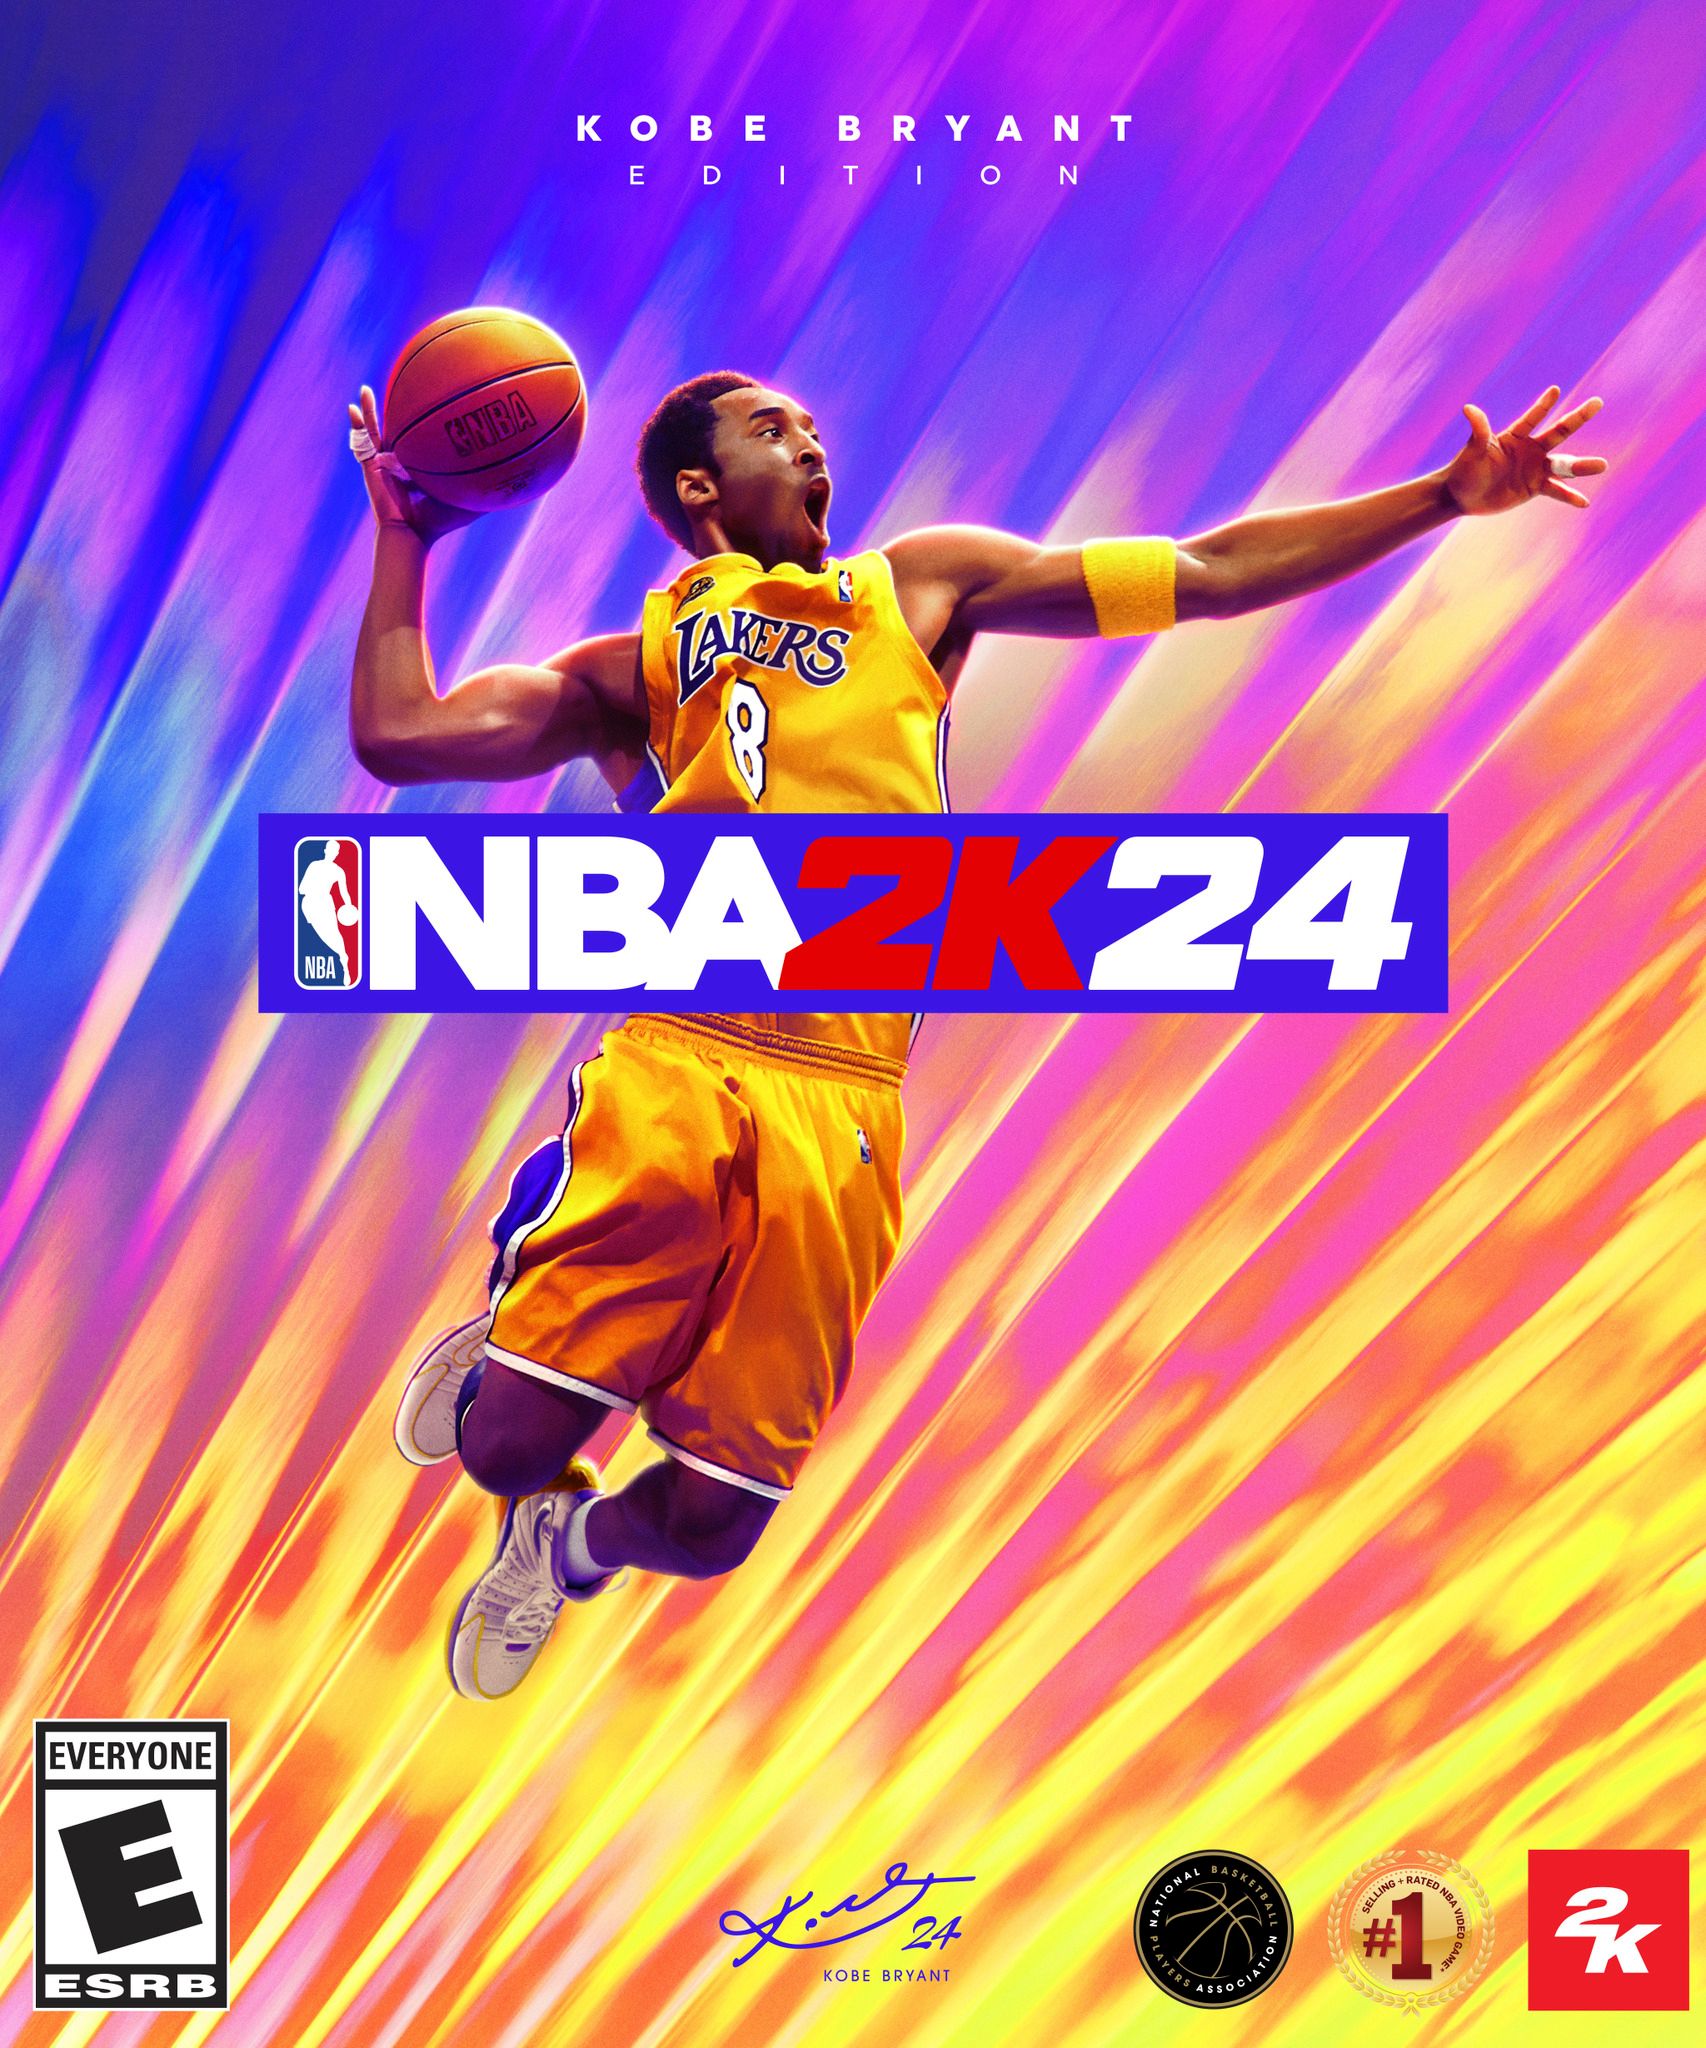 Sampul Edisi NBA 2K24 Kobe Bryant